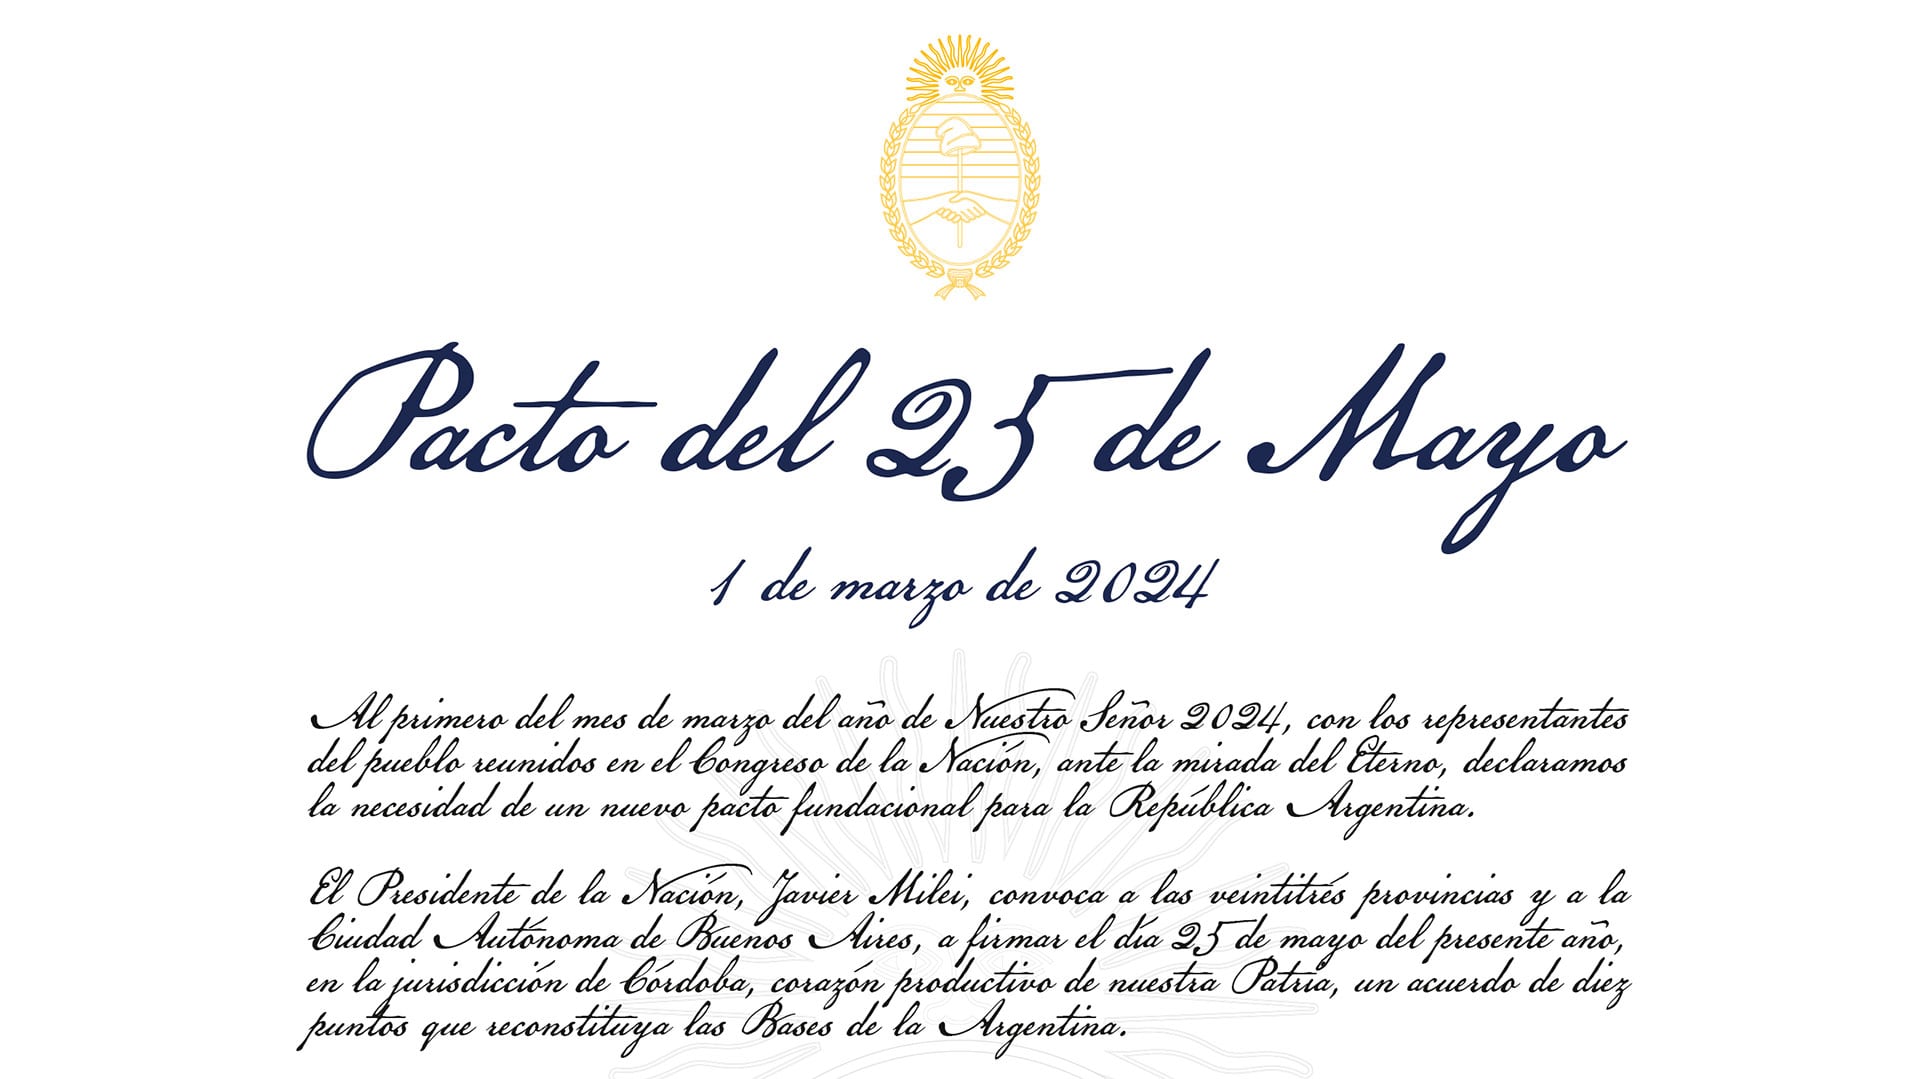 Pacto del 25 de Mayo - Javier Milei